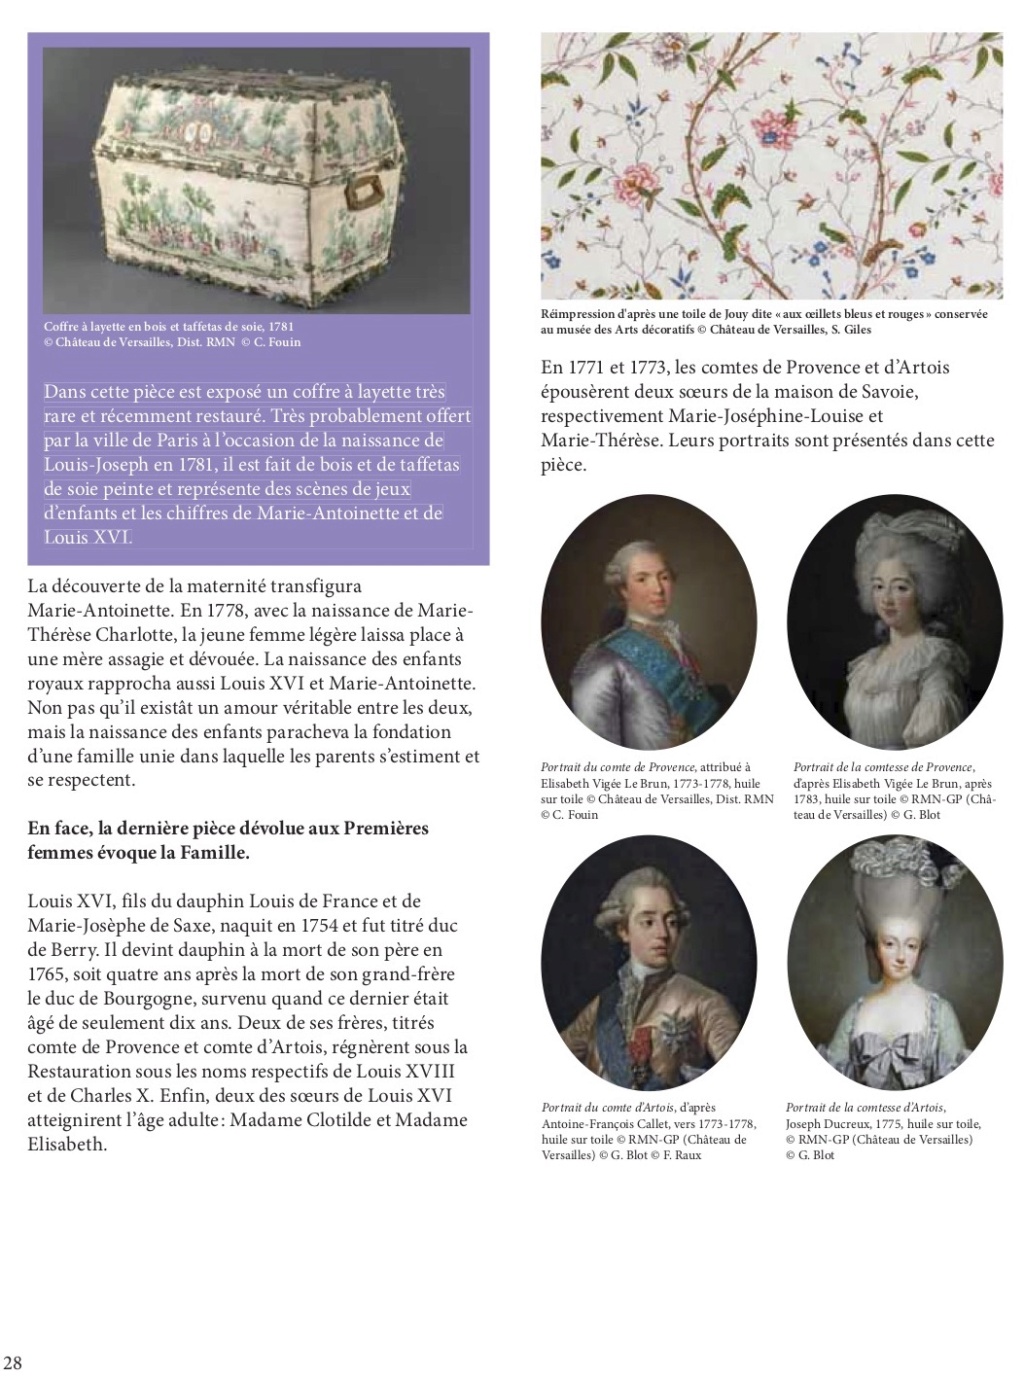 Les cabinets intérieurs de Marie-Antoinette au château de Versailles - Page 3 Dp_cab31